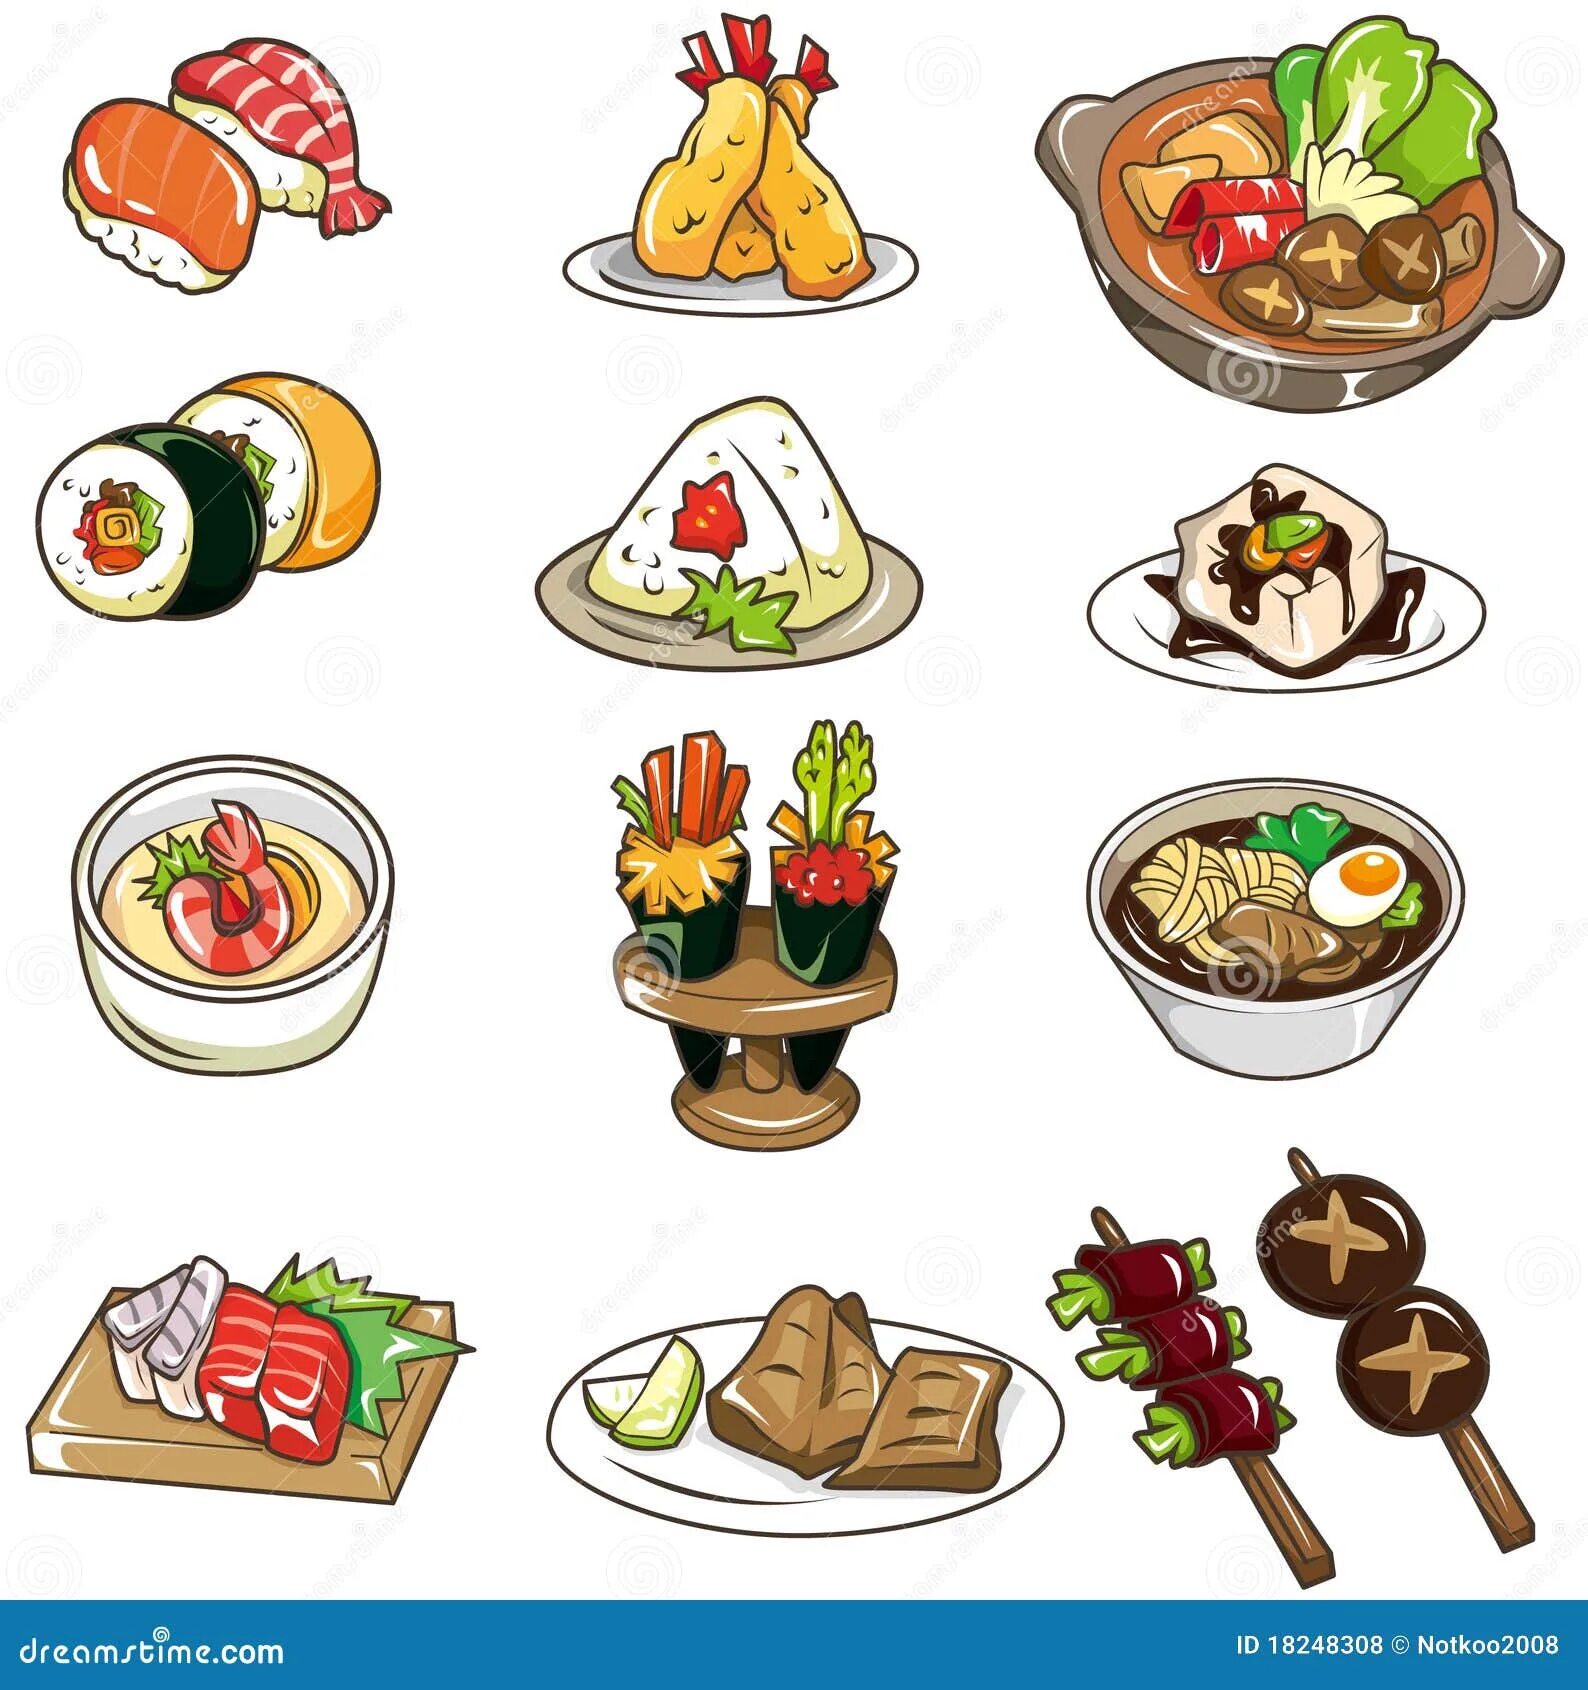 Стилизованная еда. Рисунки разных блюд. Нарисованная еда. Мультяшная еда. Вся еда а4